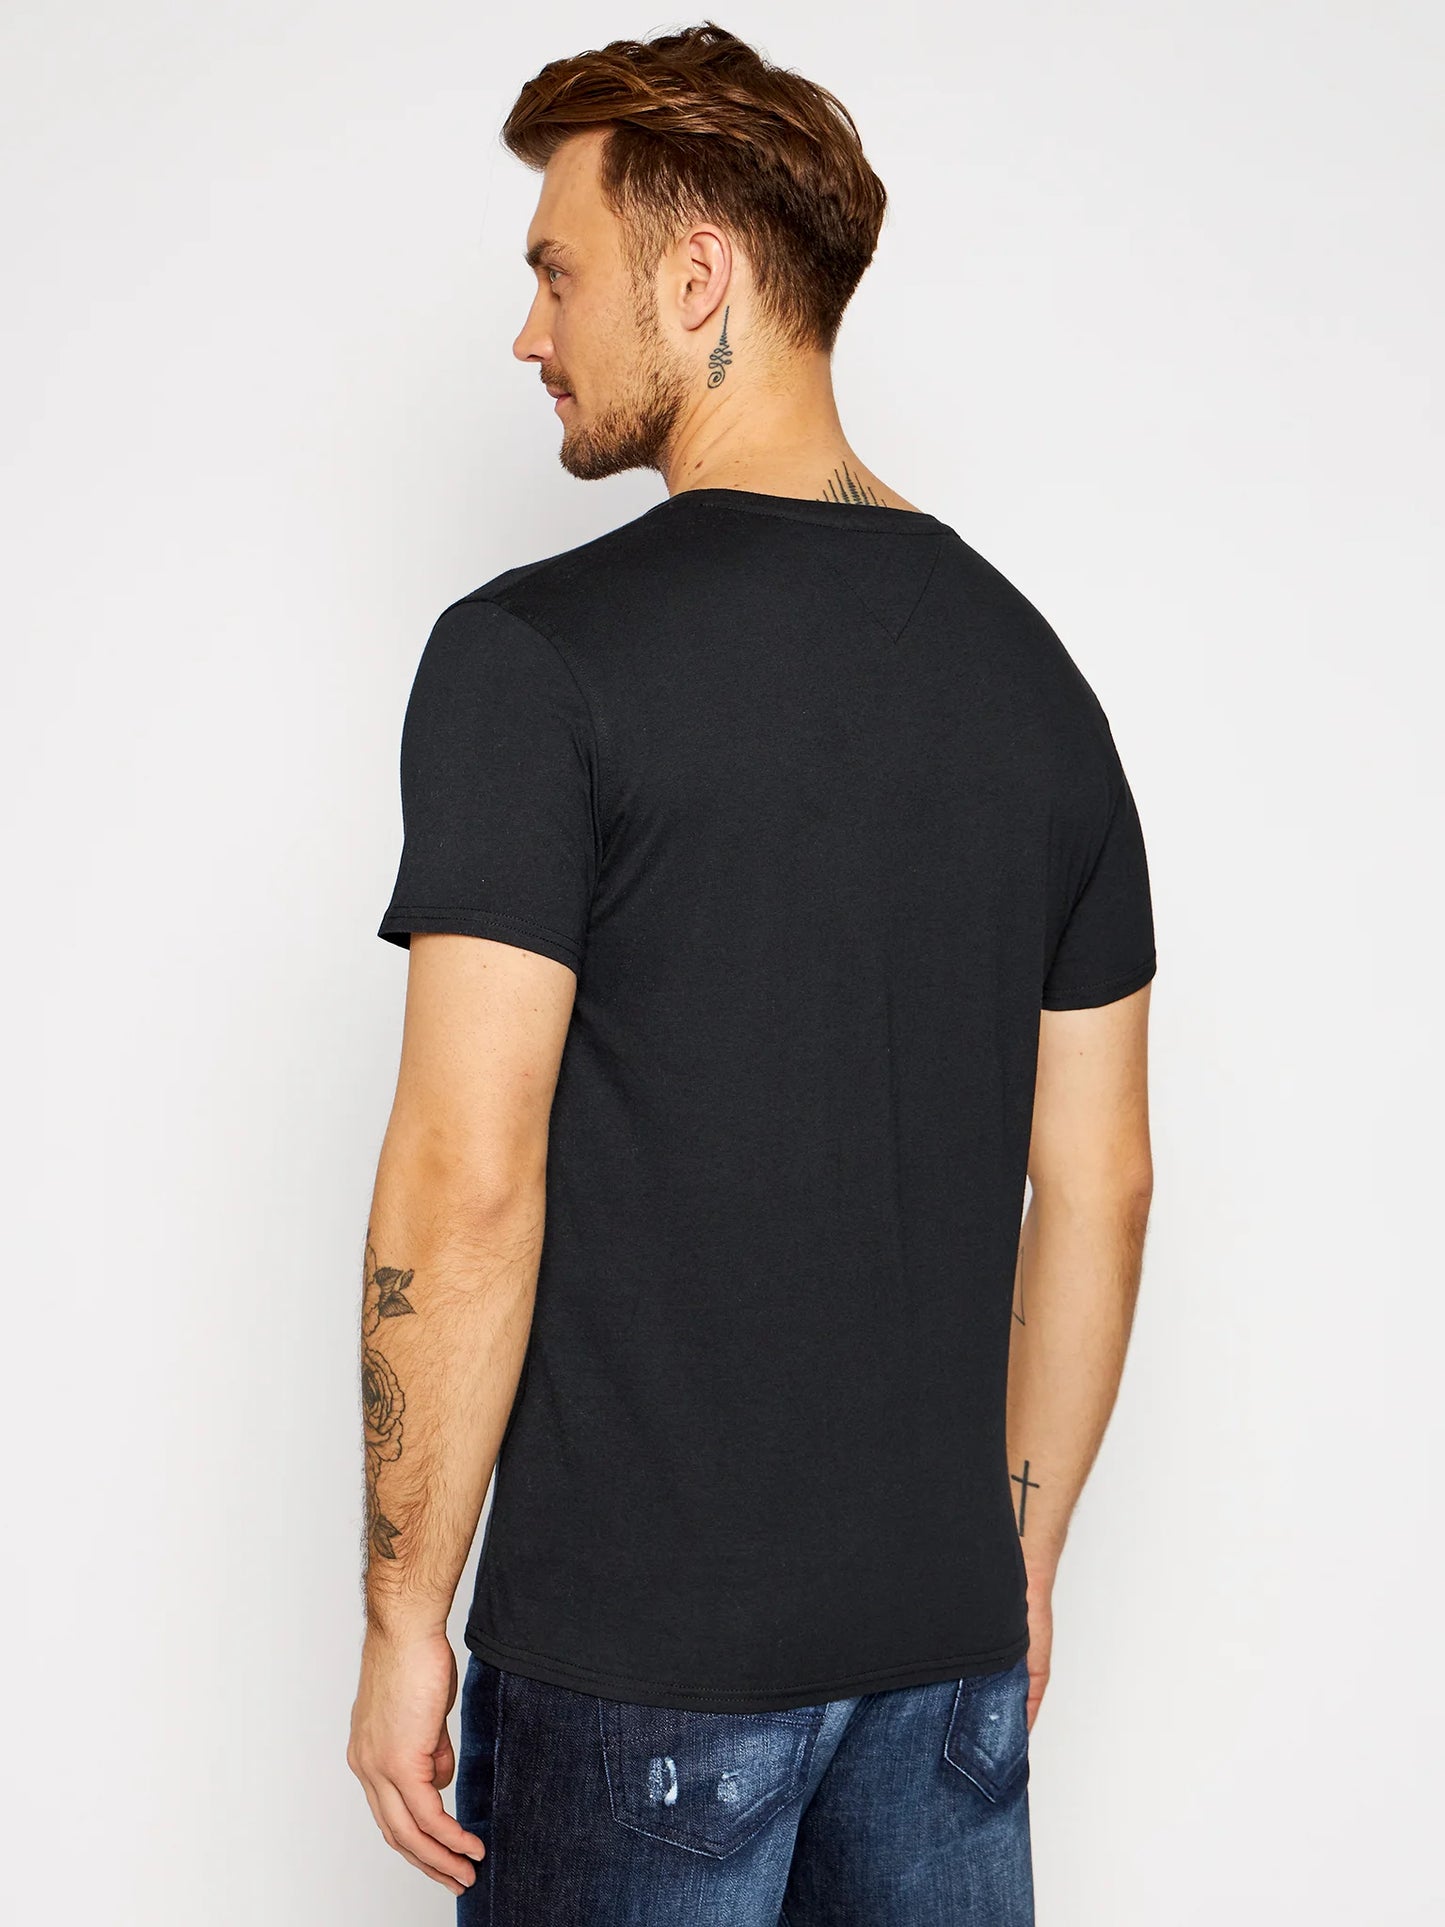 Tommy Jeans black t-shirt for men